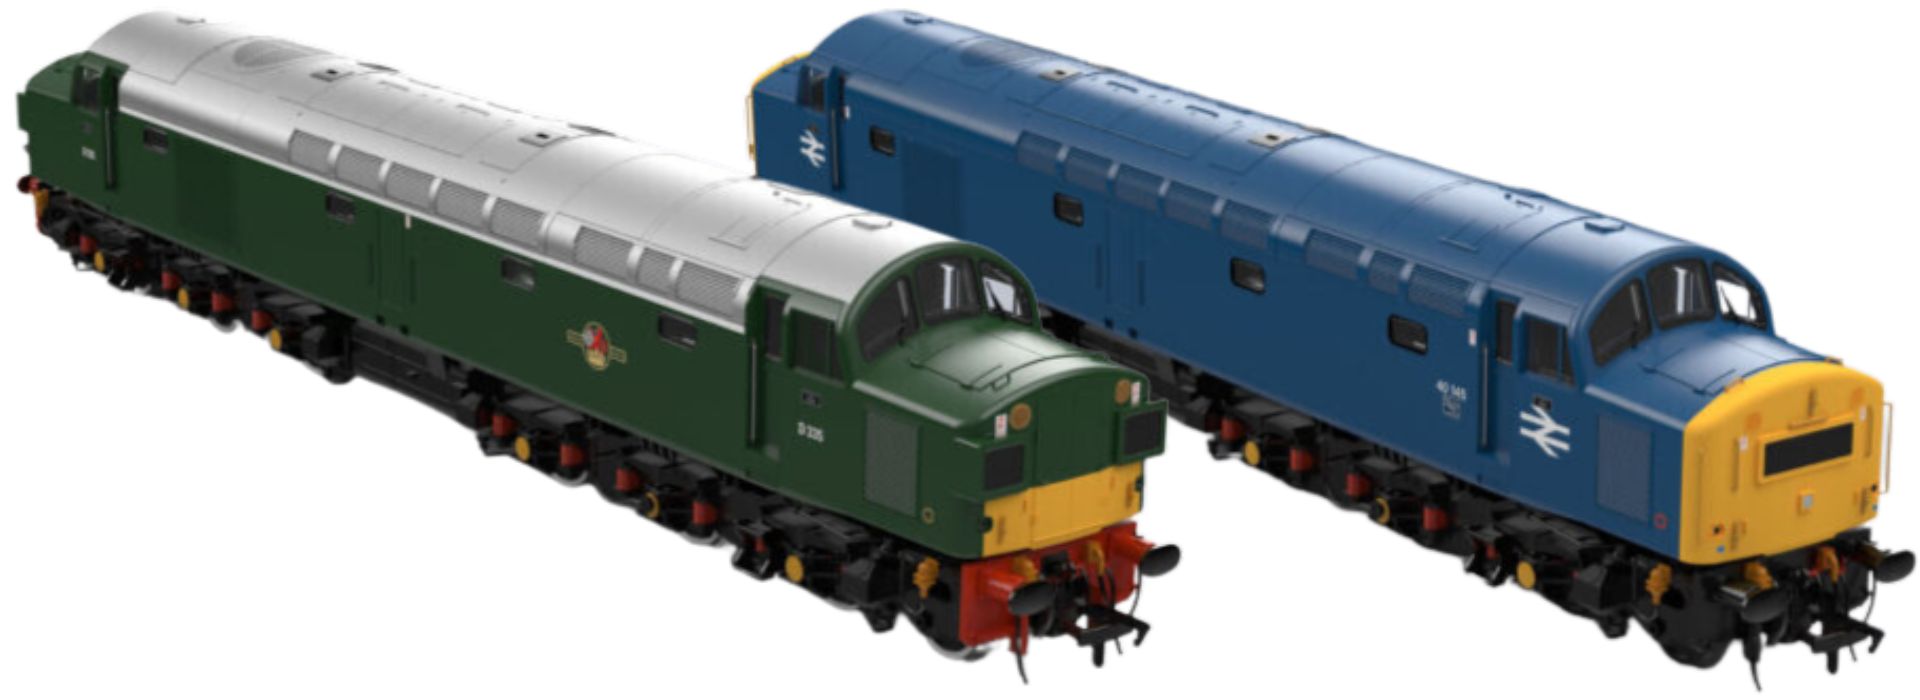 KR Models OO Gauge (1:76 Scale) Class 40